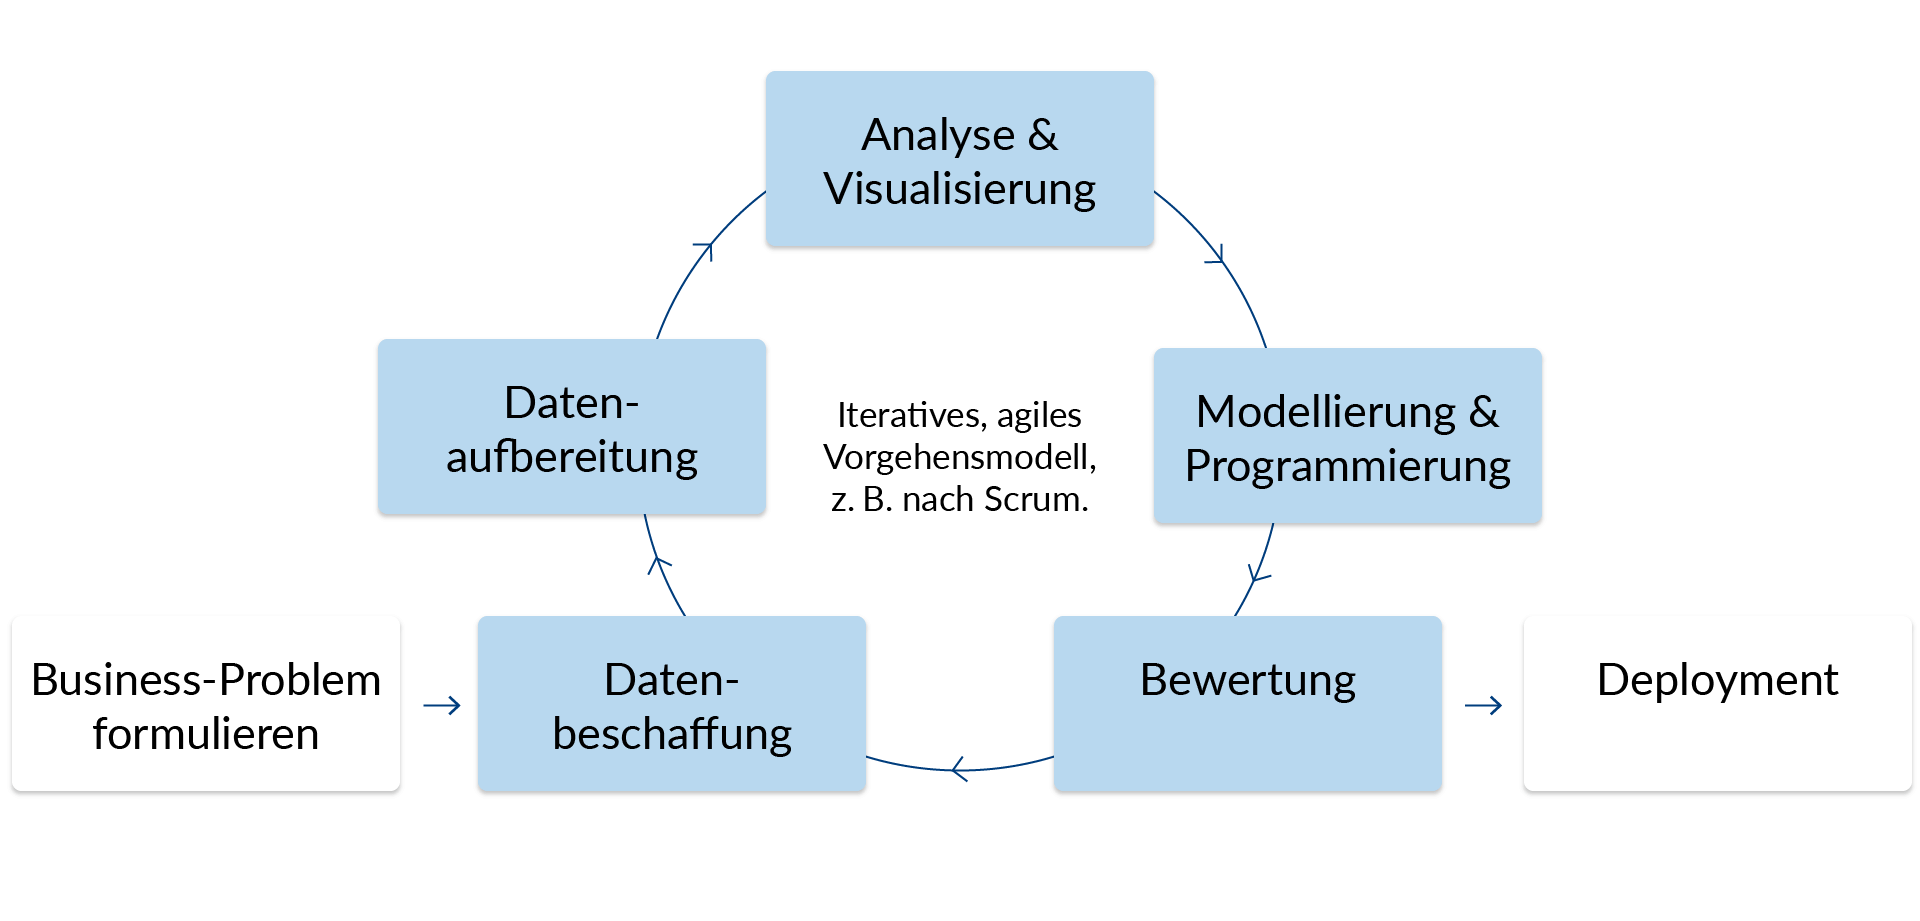 Darstellung des iterativen, agilen Vorgehensmodell